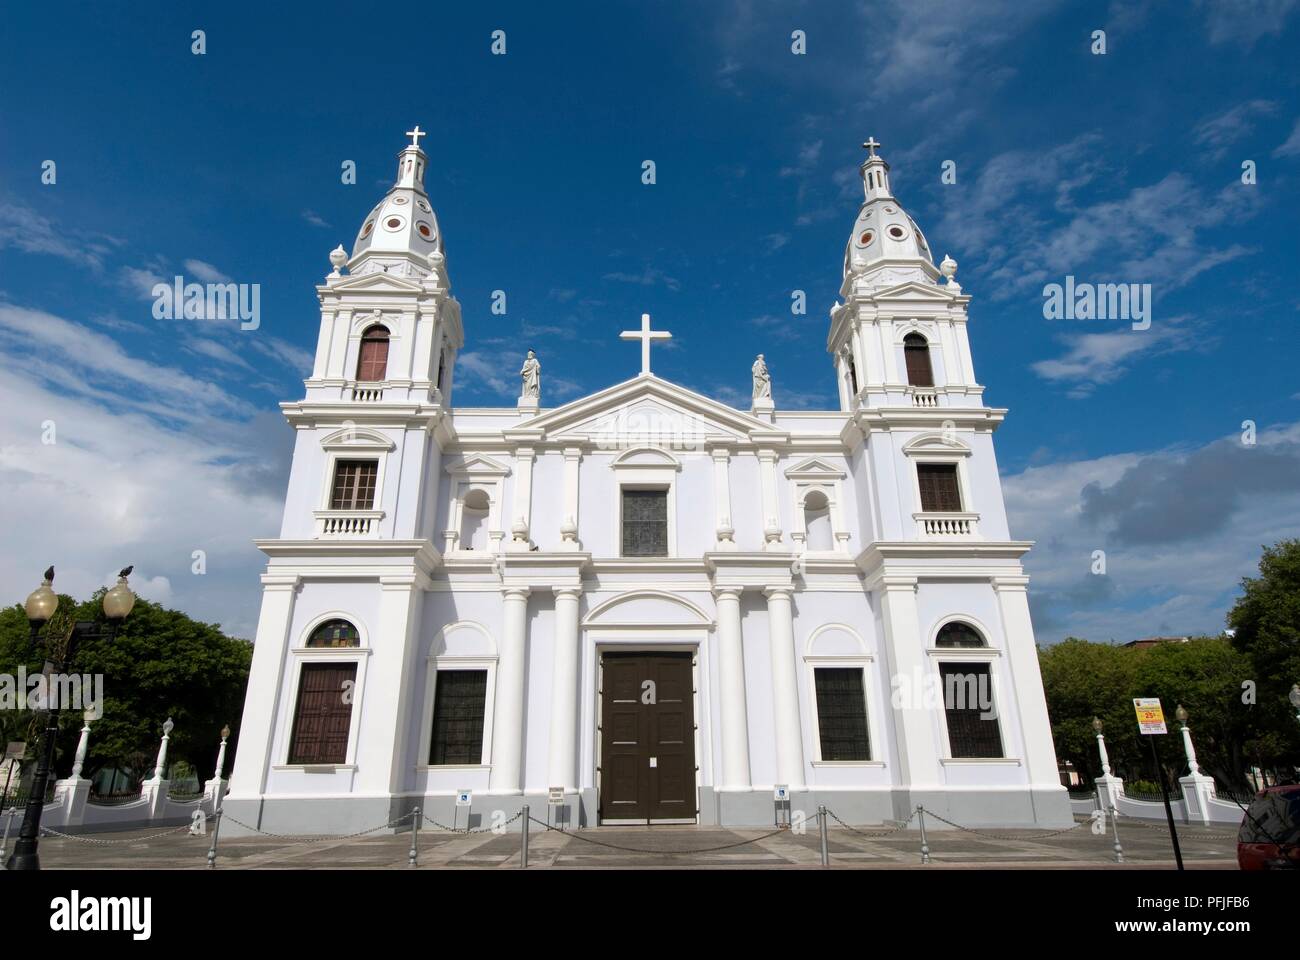 Puerto Rico, Ponce, Plaza de las Delicias, Cathédrale Nuestra Señora de Guadalupe, façade néoclassique, low angle view Banque D'Images